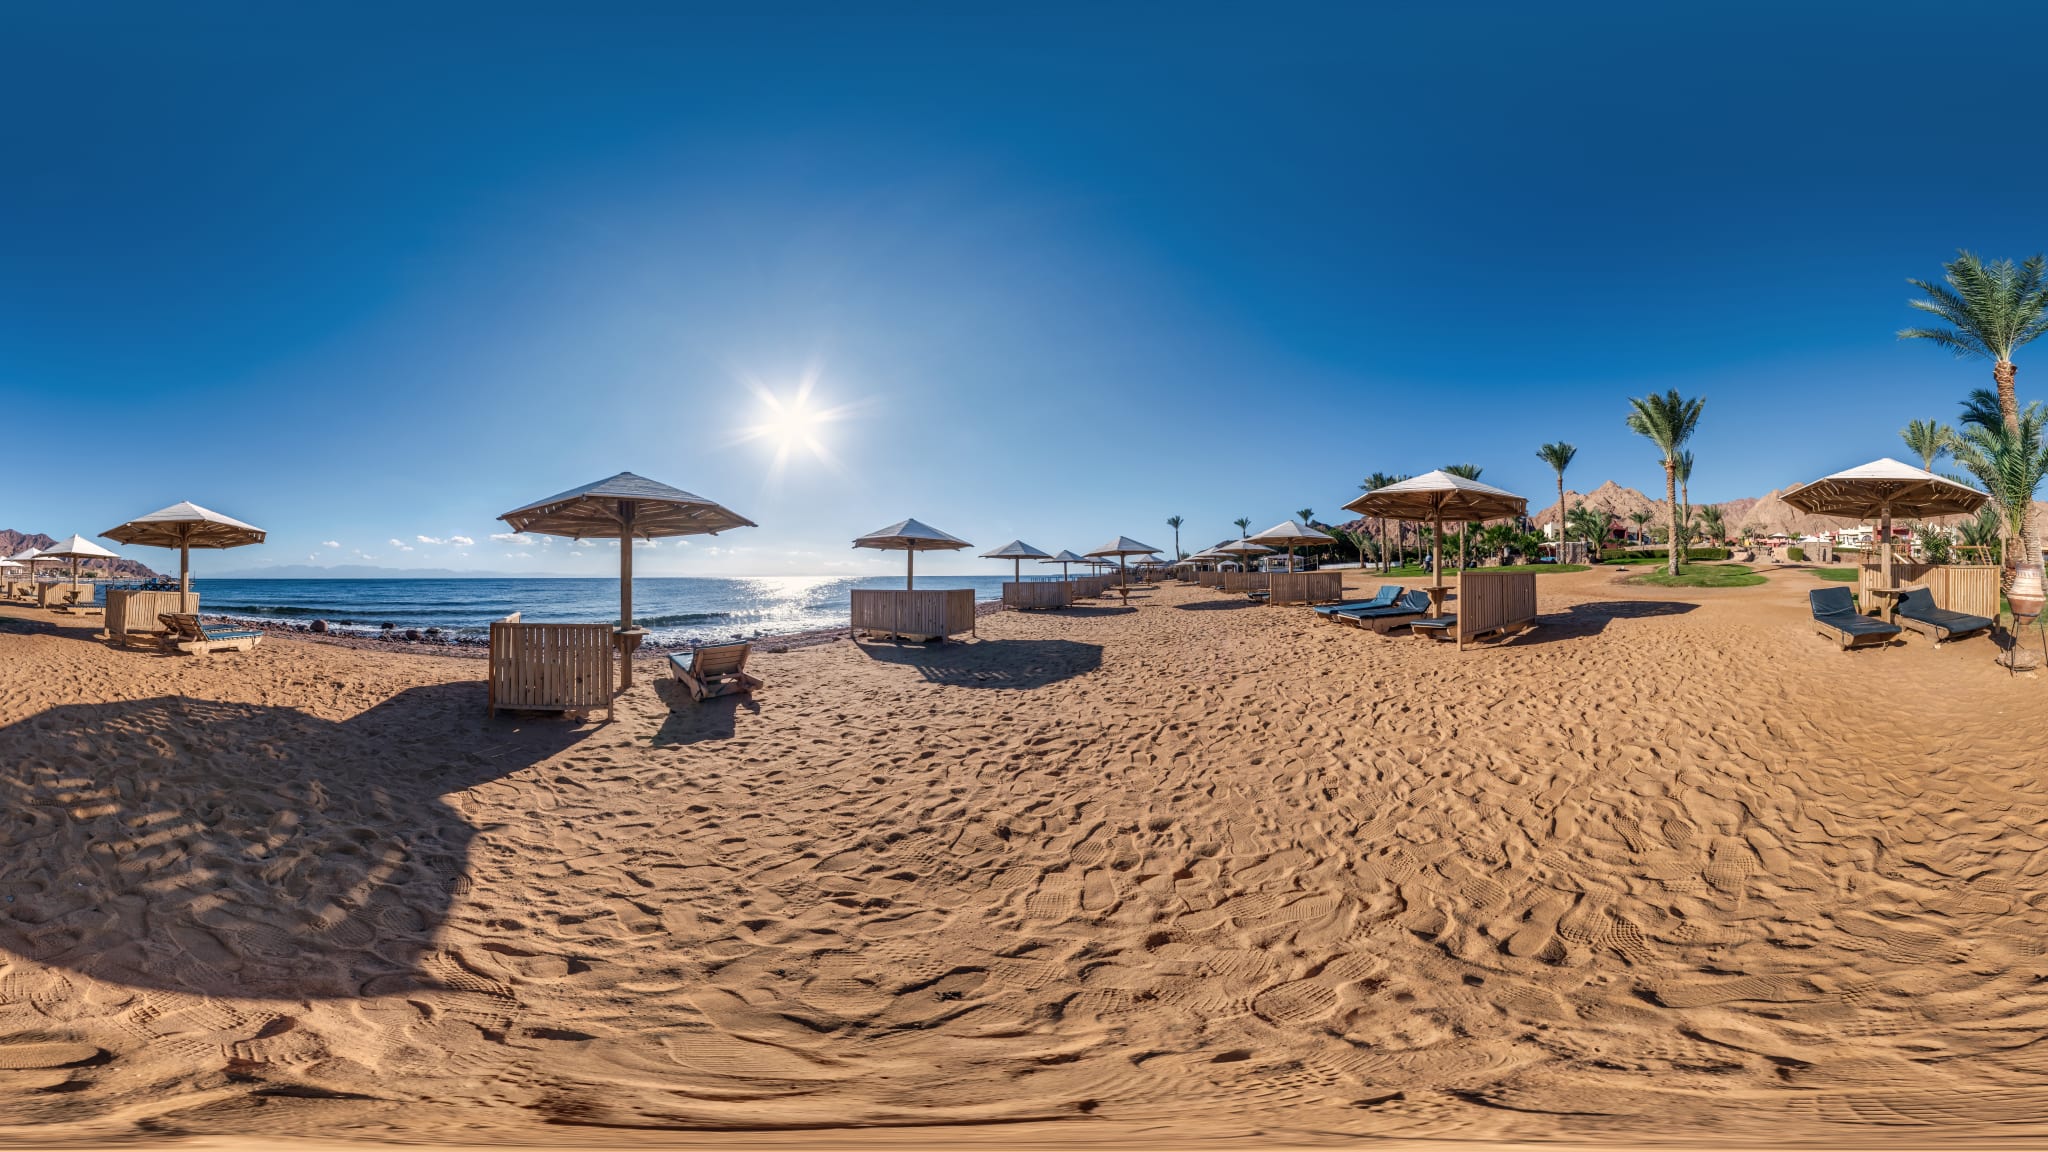 360 Grad Panoramasicht auf einen Strandabschnitt am rotem Meer